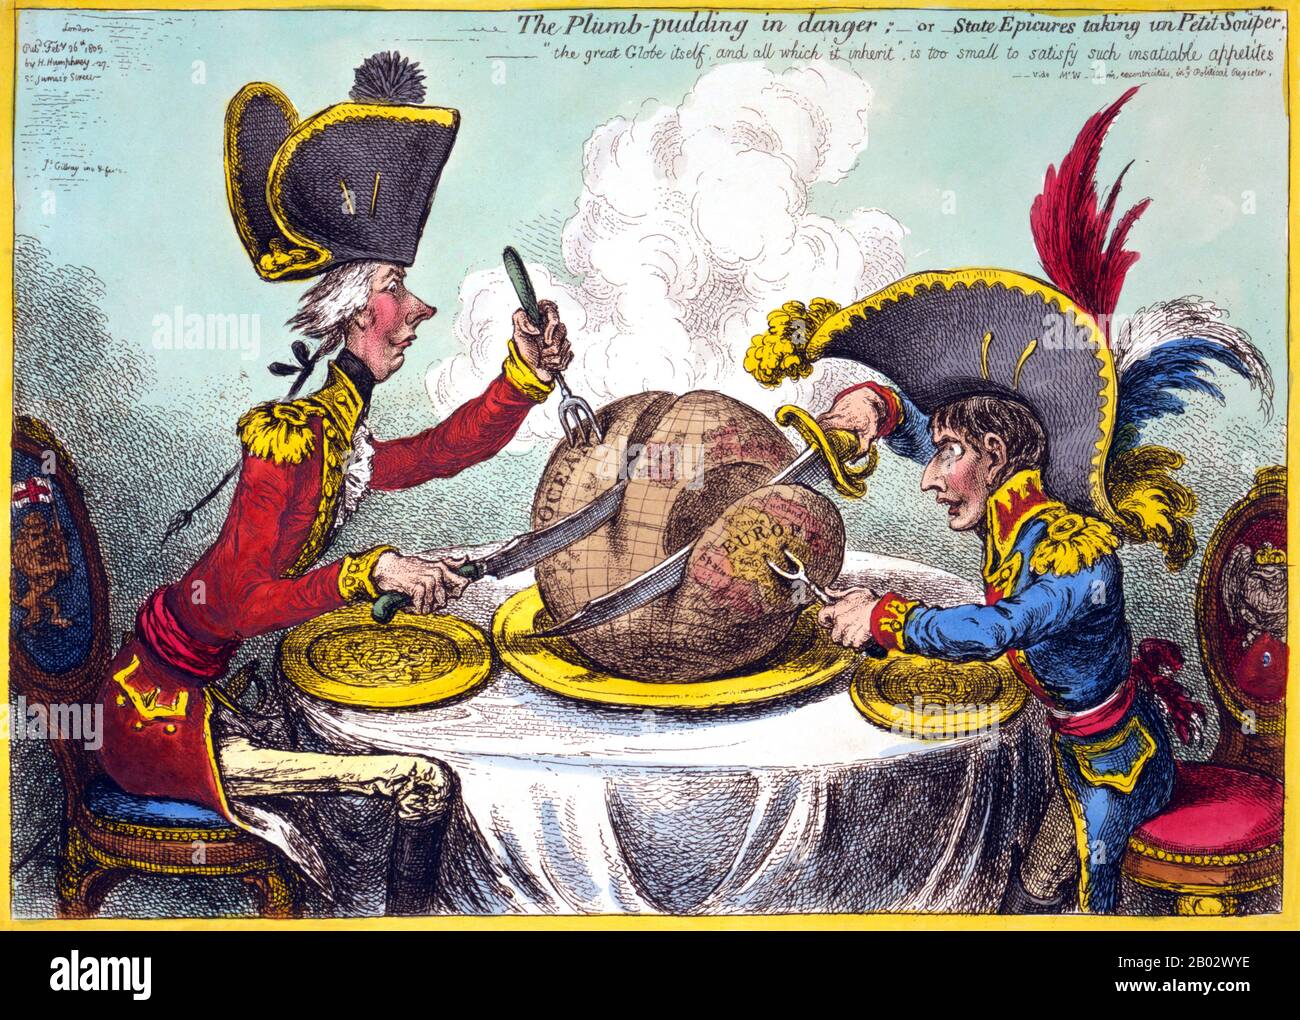 William Pitt, der eine Regimentsuniform und einen Hut trägt, sitzt mit Napoleon an einem Tisch. Sie schnitzen jeweils einen großen Pflaumenpudding, auf dem sich eine Weltkarte befindet. Pitts Scheibe ist deutlich größer als die von Napoleon. Der neue Kaiser und sein Gegner der englische Minister helfen sich selbst - einer nimmt das Land, der andere das Meer. Über die vom neuen Kaiser im Januar 1805 für eine Versöhnung mit England gemachten Überläufer. Stockfoto